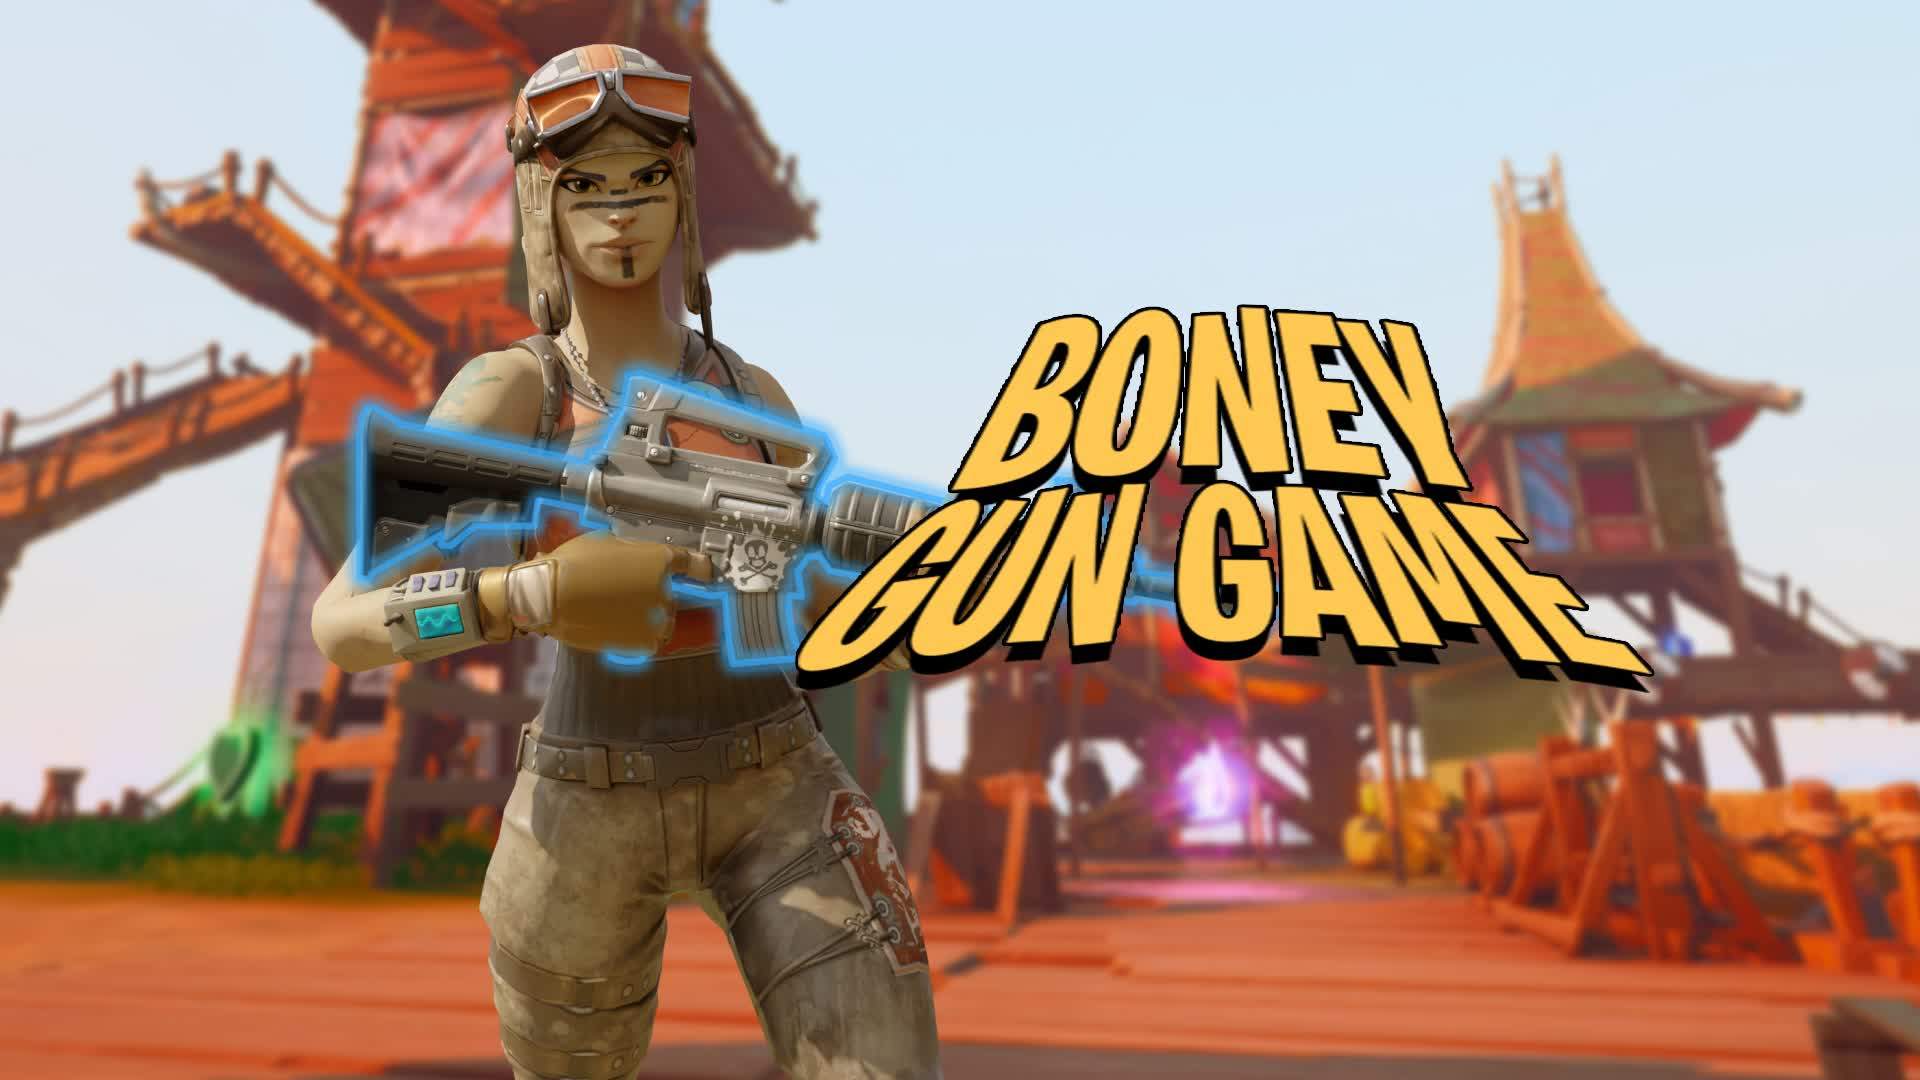 Boney Gun Game